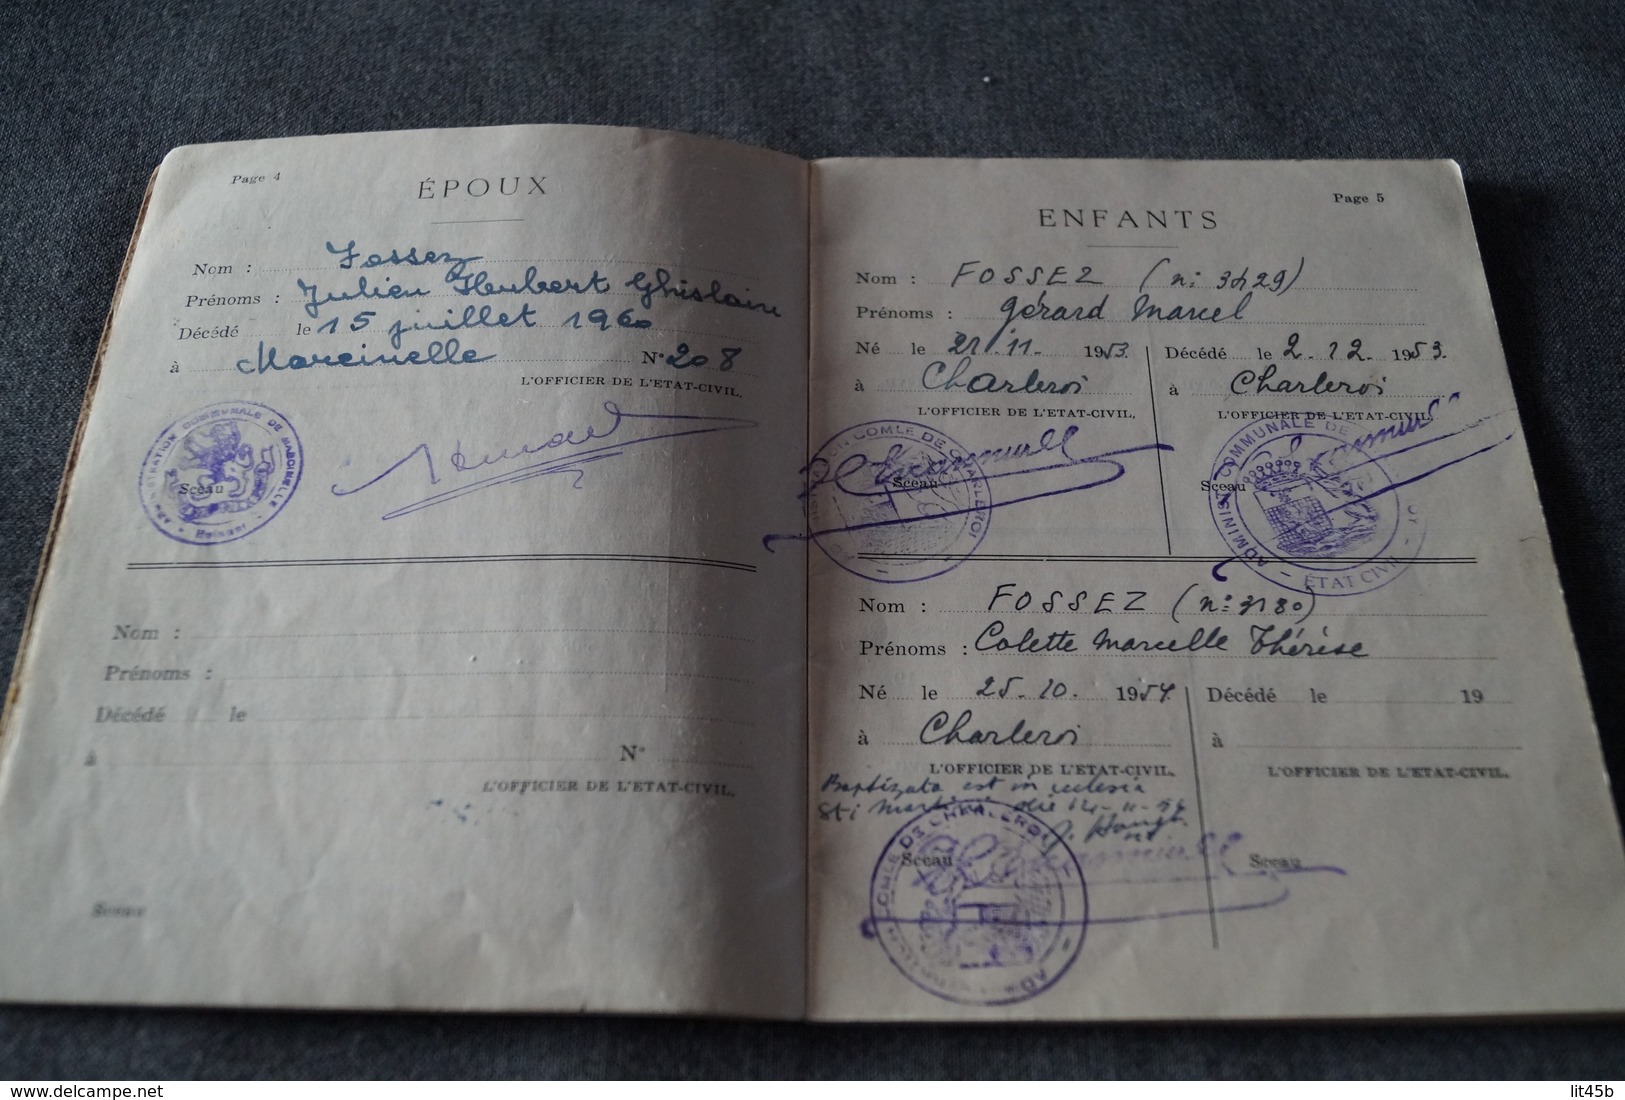 Charleroi,Fossez Julien et Hament Andrée,1944,ancien carnet de mariage,pour collection